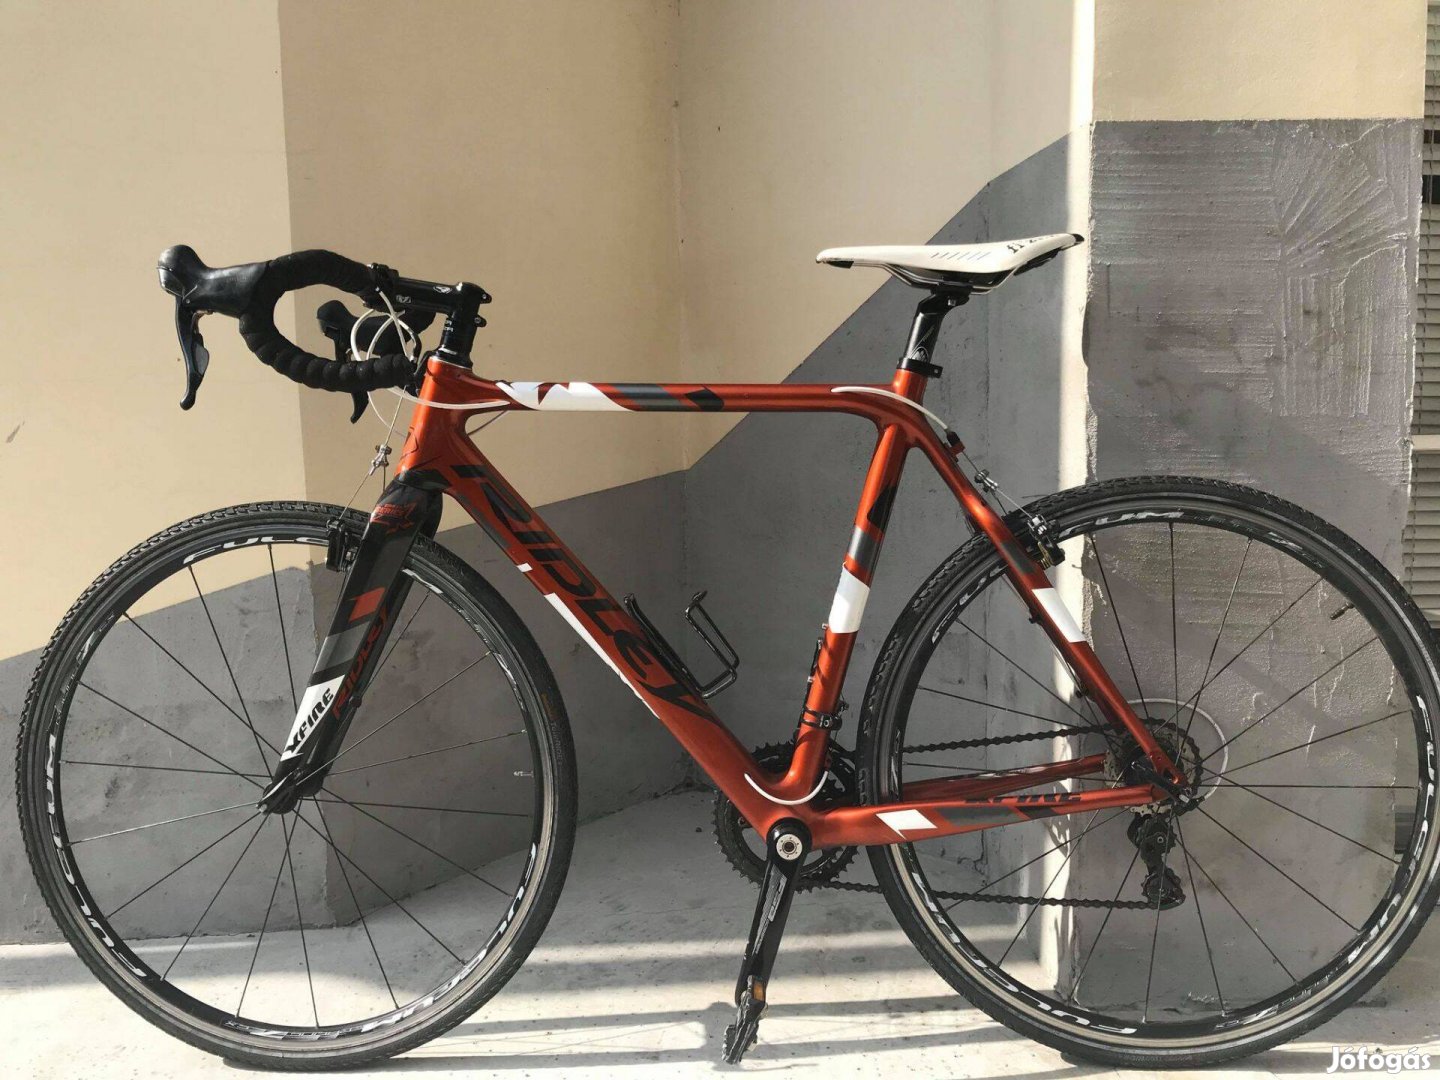 Eladó Ridley Xfire Shimano 105 carbon országúti kerékpár újszerű